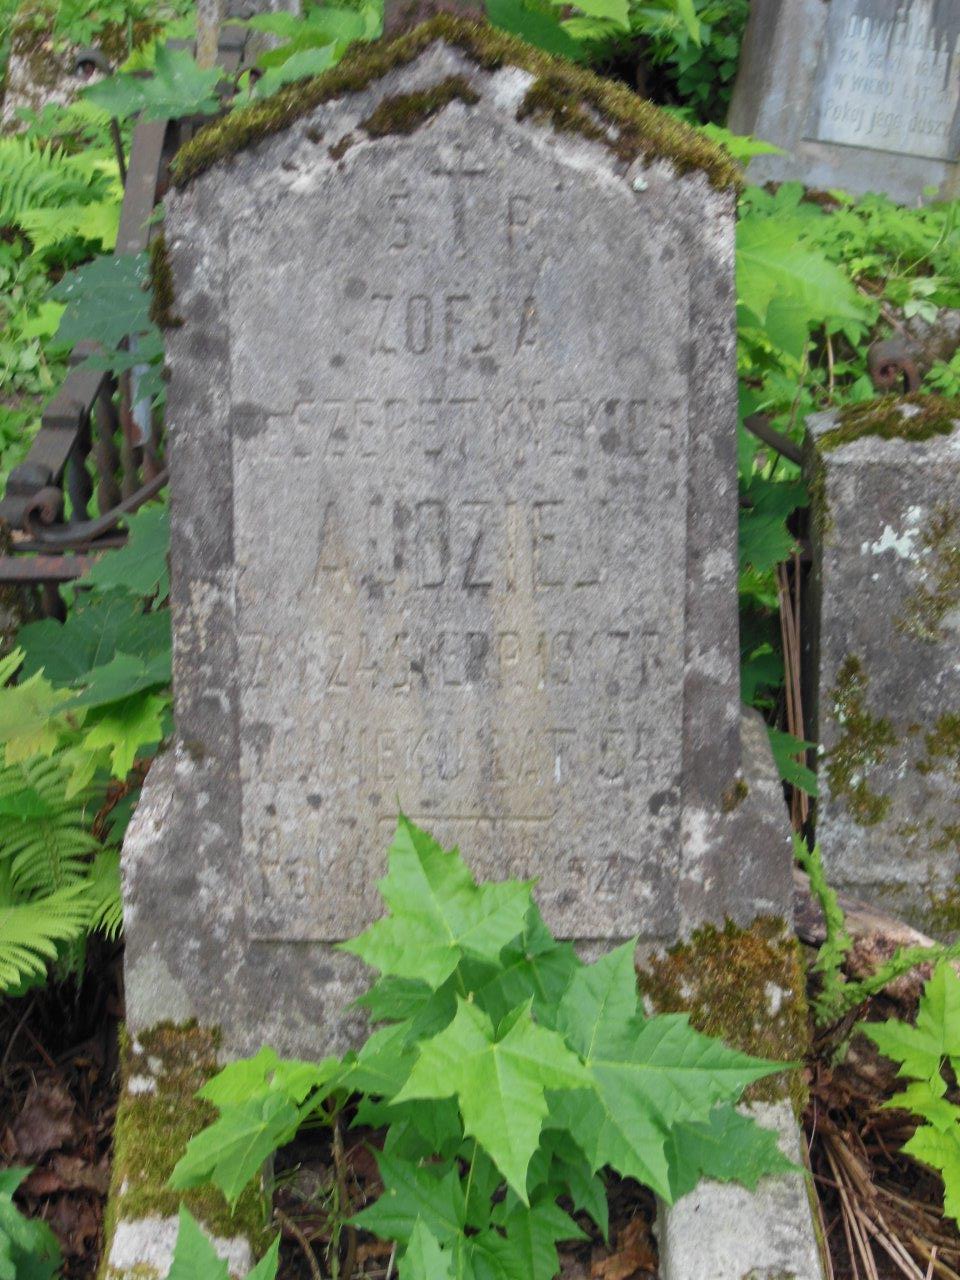 Inscription on the gravestone of Zofia Audziej, Na Rossie cemetery in Vilnius, as of 2013